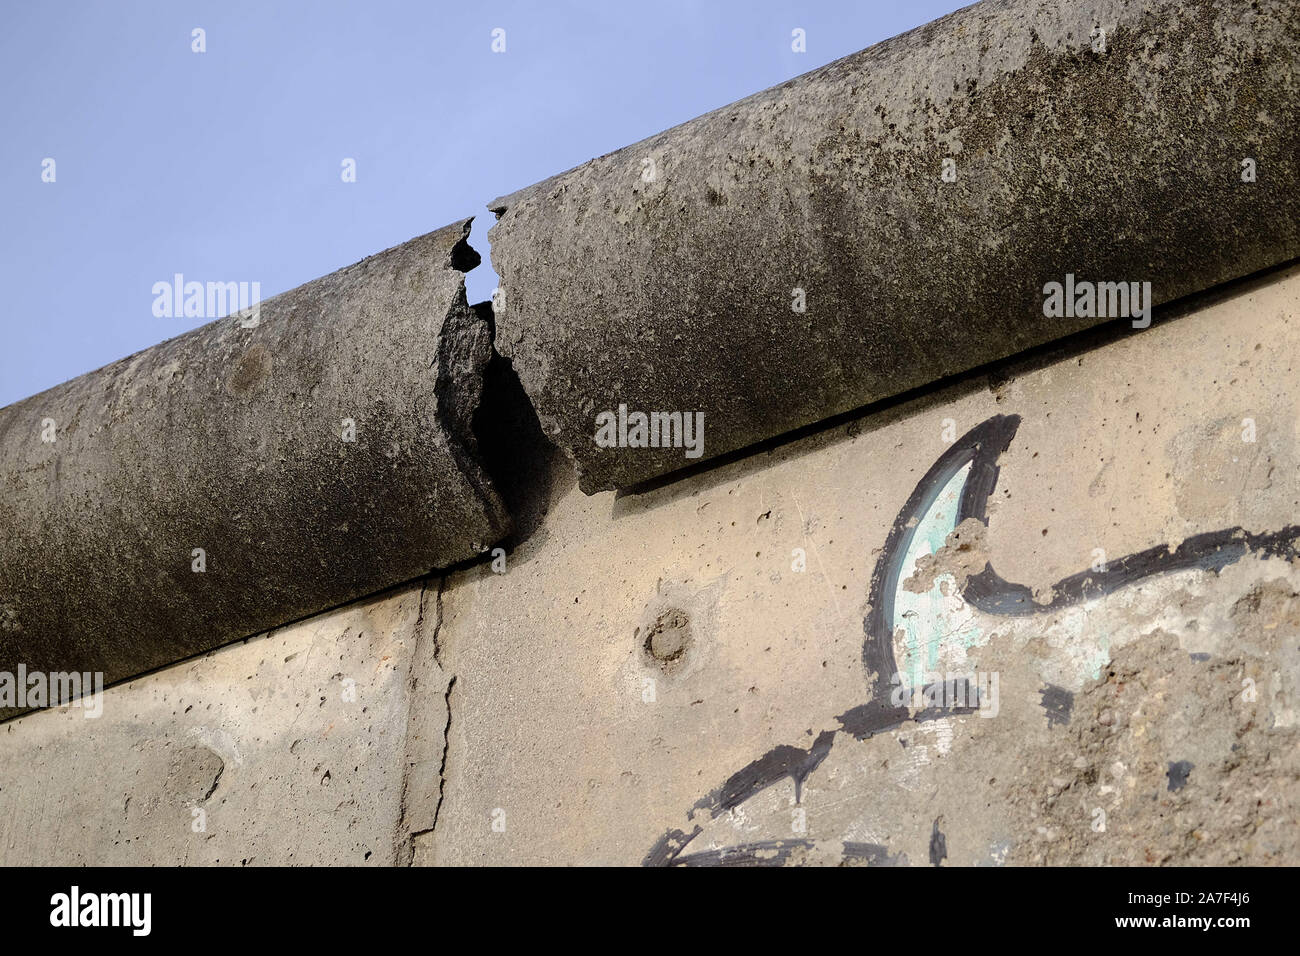 Berlin, Berlin, Allemagne. 1er novembre 2019. Une partie du solde à 200 mètres du mur de Berlin à NiederkirchnerstraÃŸe au centre de Berlin. Le mur de Berlin a été massif et complexe de la frontière est devenu un symbole international de la division de l'Allemagne après la Seconde Guerre mondiale et de la guerre froide entre l'Est et l'Ouest. Le 9 novembre 2019 marquera le 30e anniversaire de la "chute" du mur le 9 novembre 1989. Crédit : Jan Scheunert/ZUMA/Alamy Fil Live News Banque D'Images